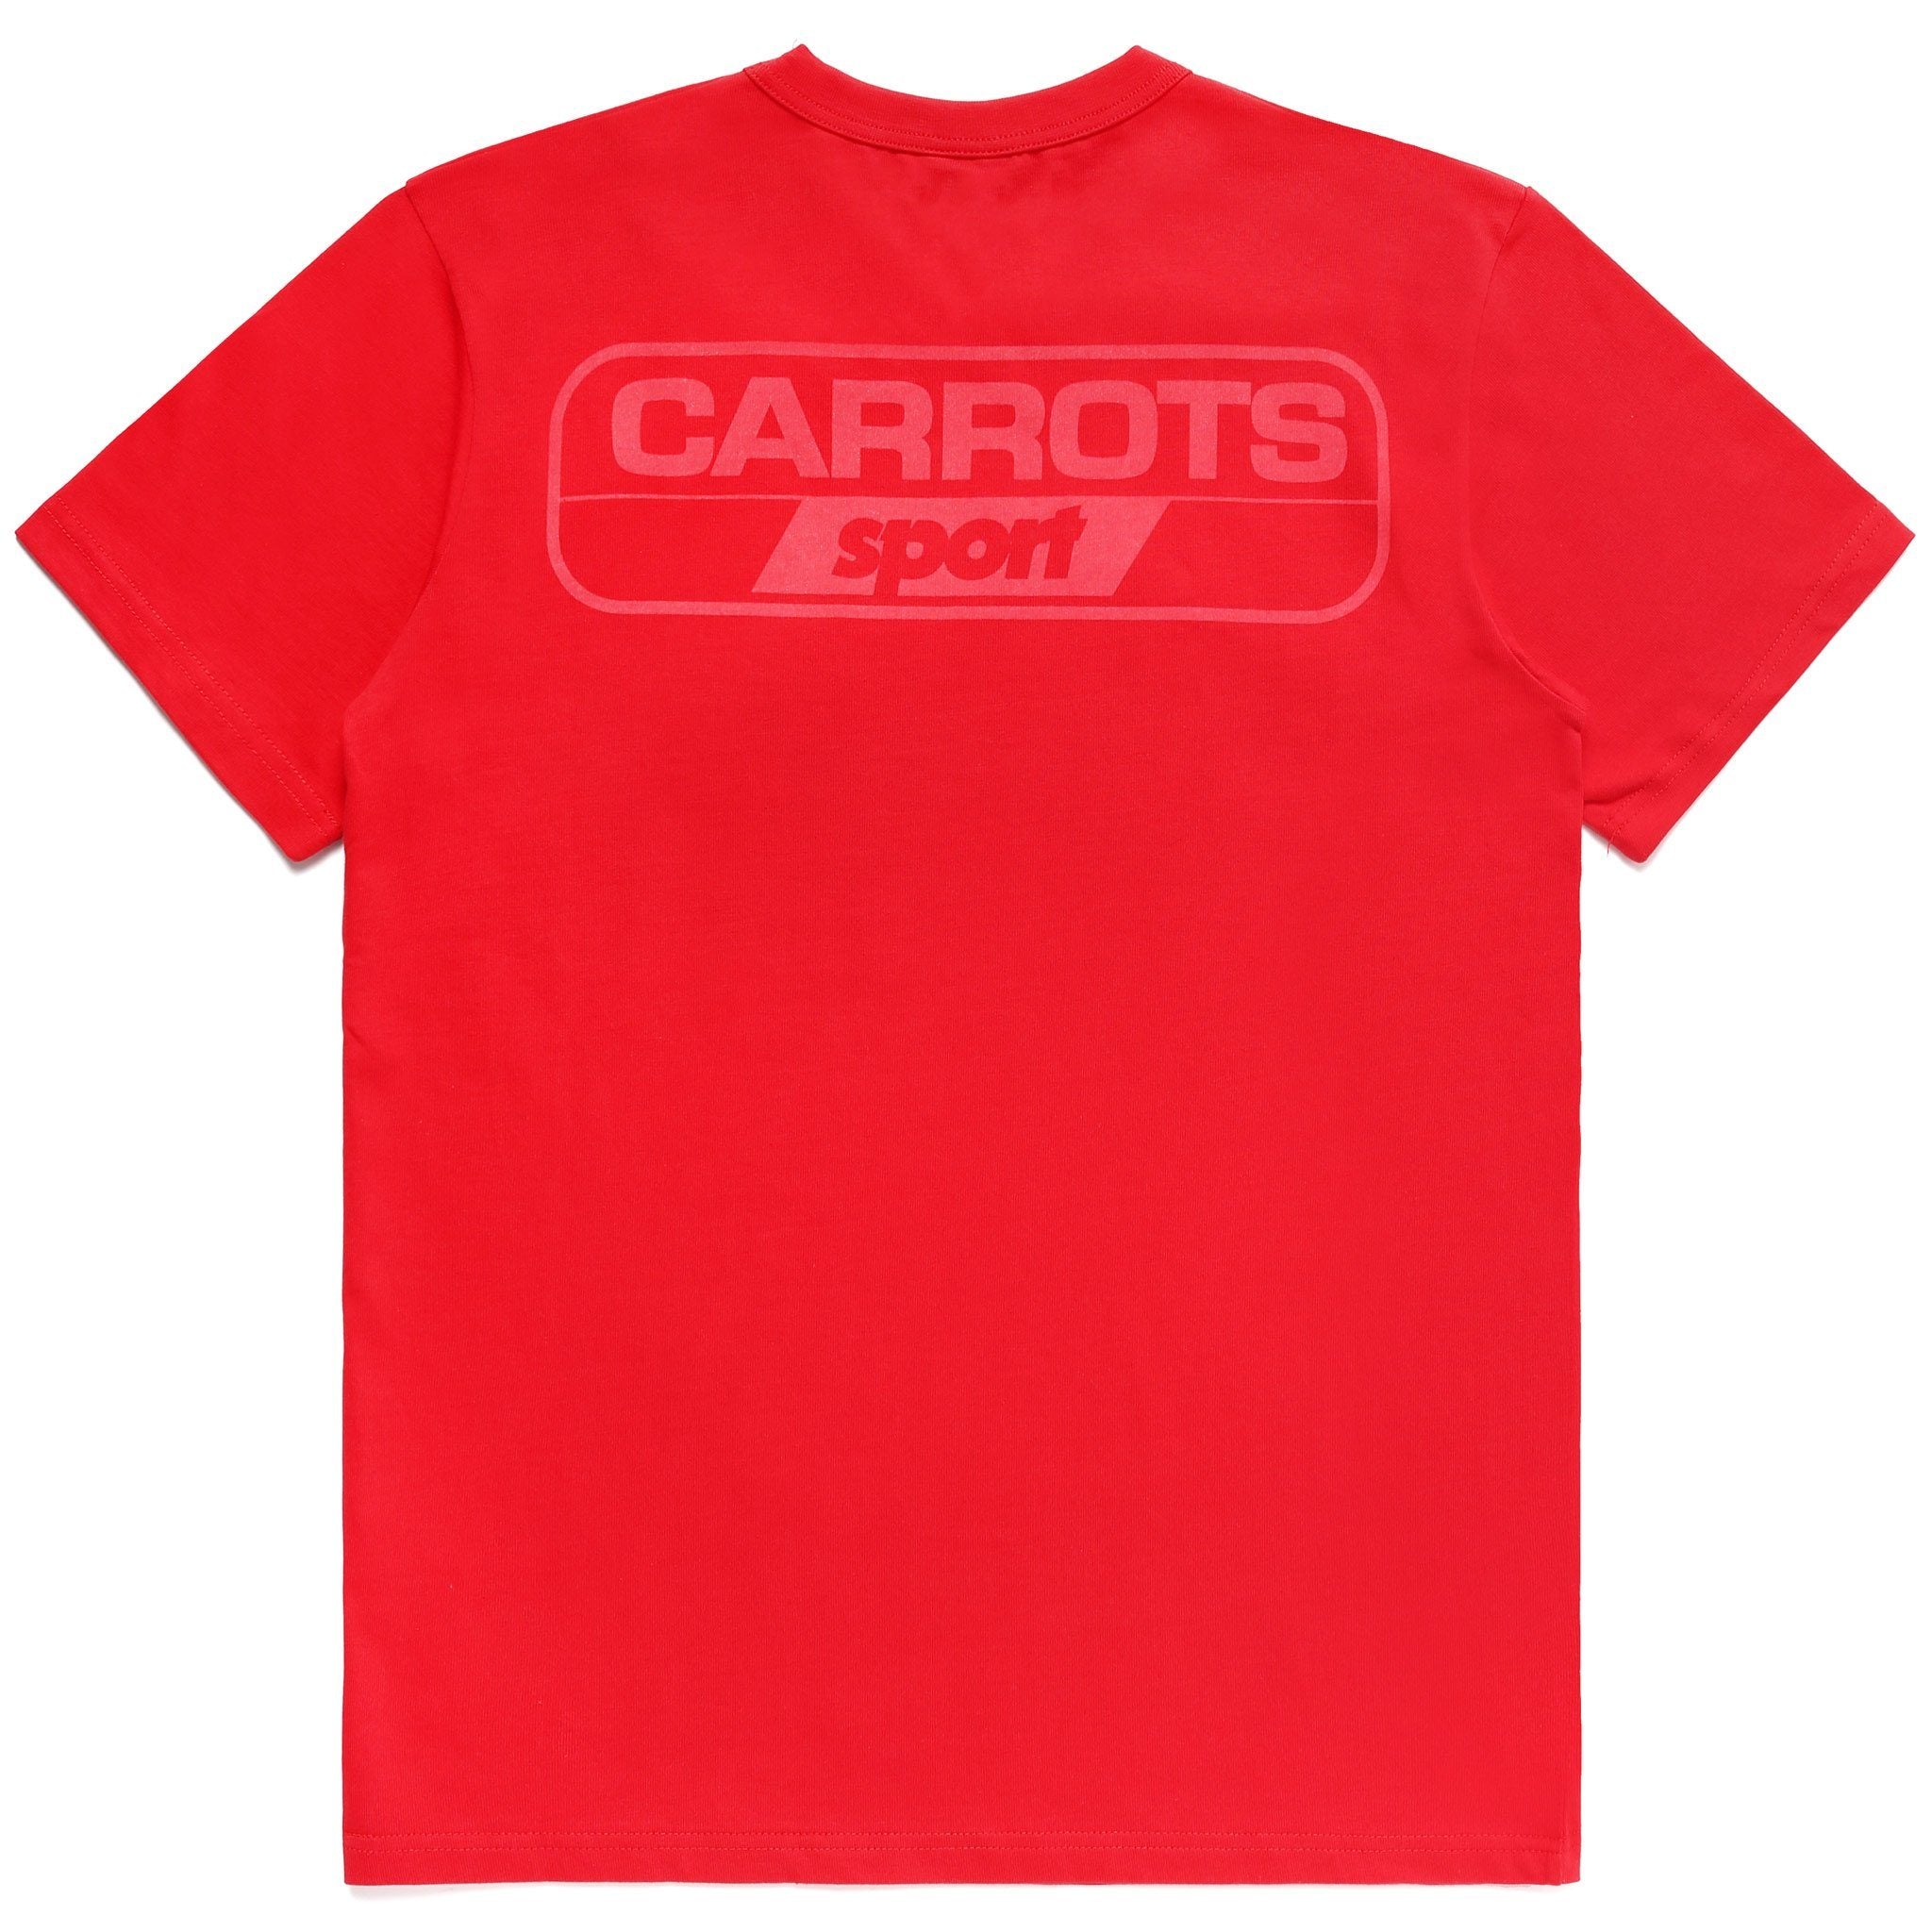 T-SHIRTS - Carrots Sport T-Shirt Red Men CSPSS-REDD